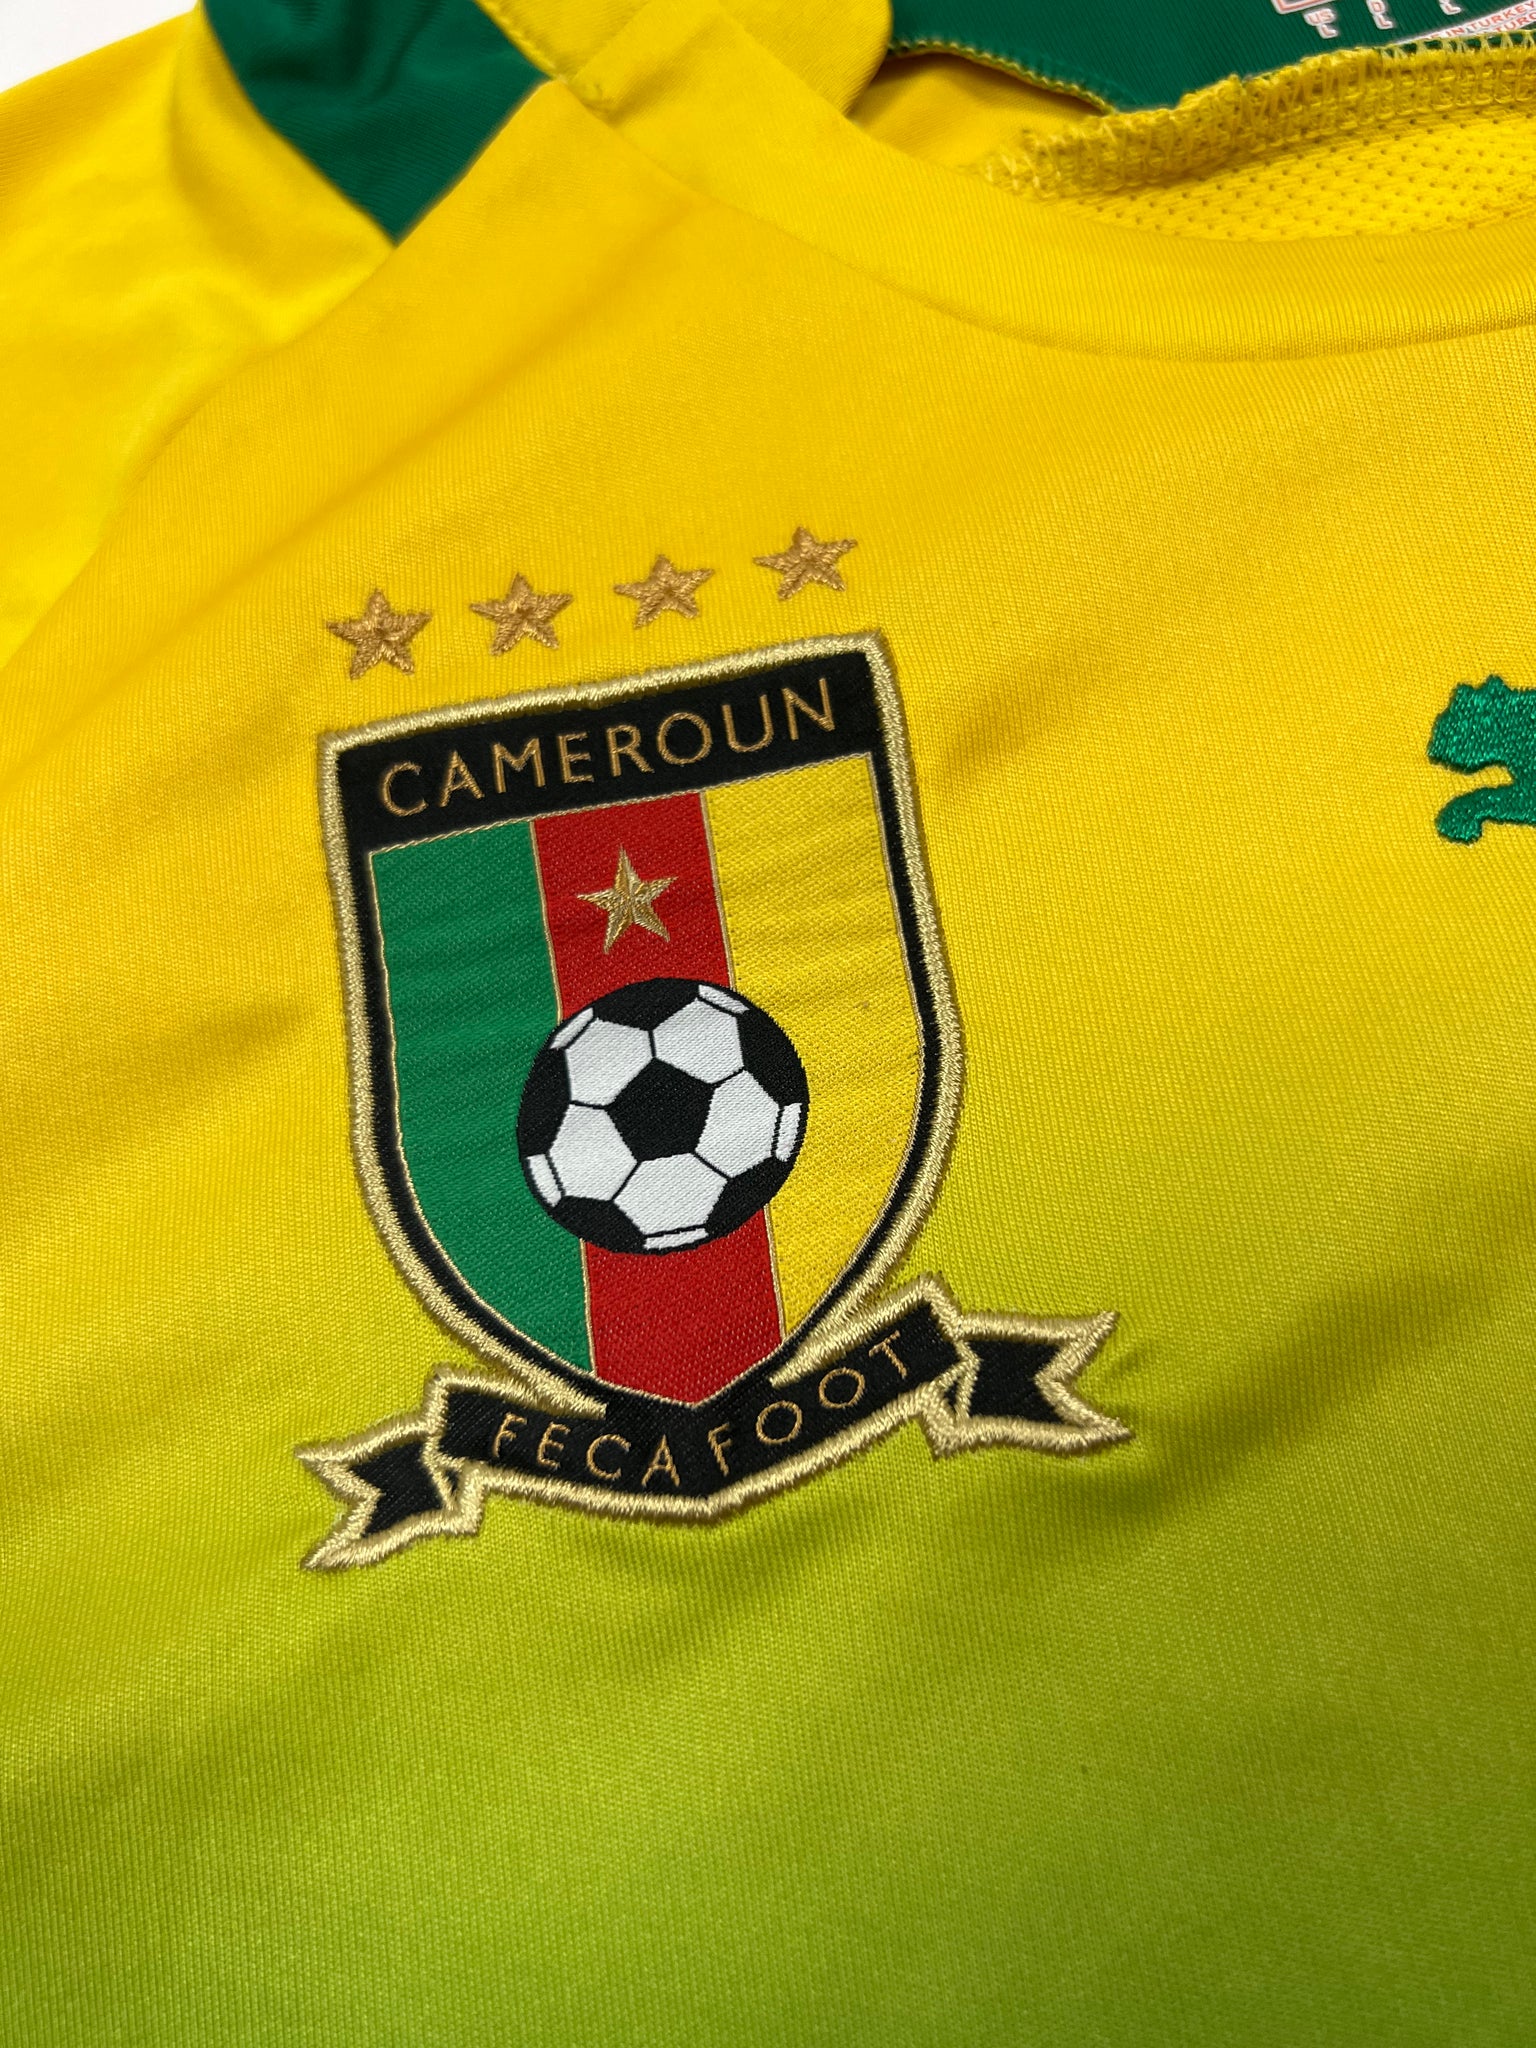 Puma Cameroon Jersey (L)